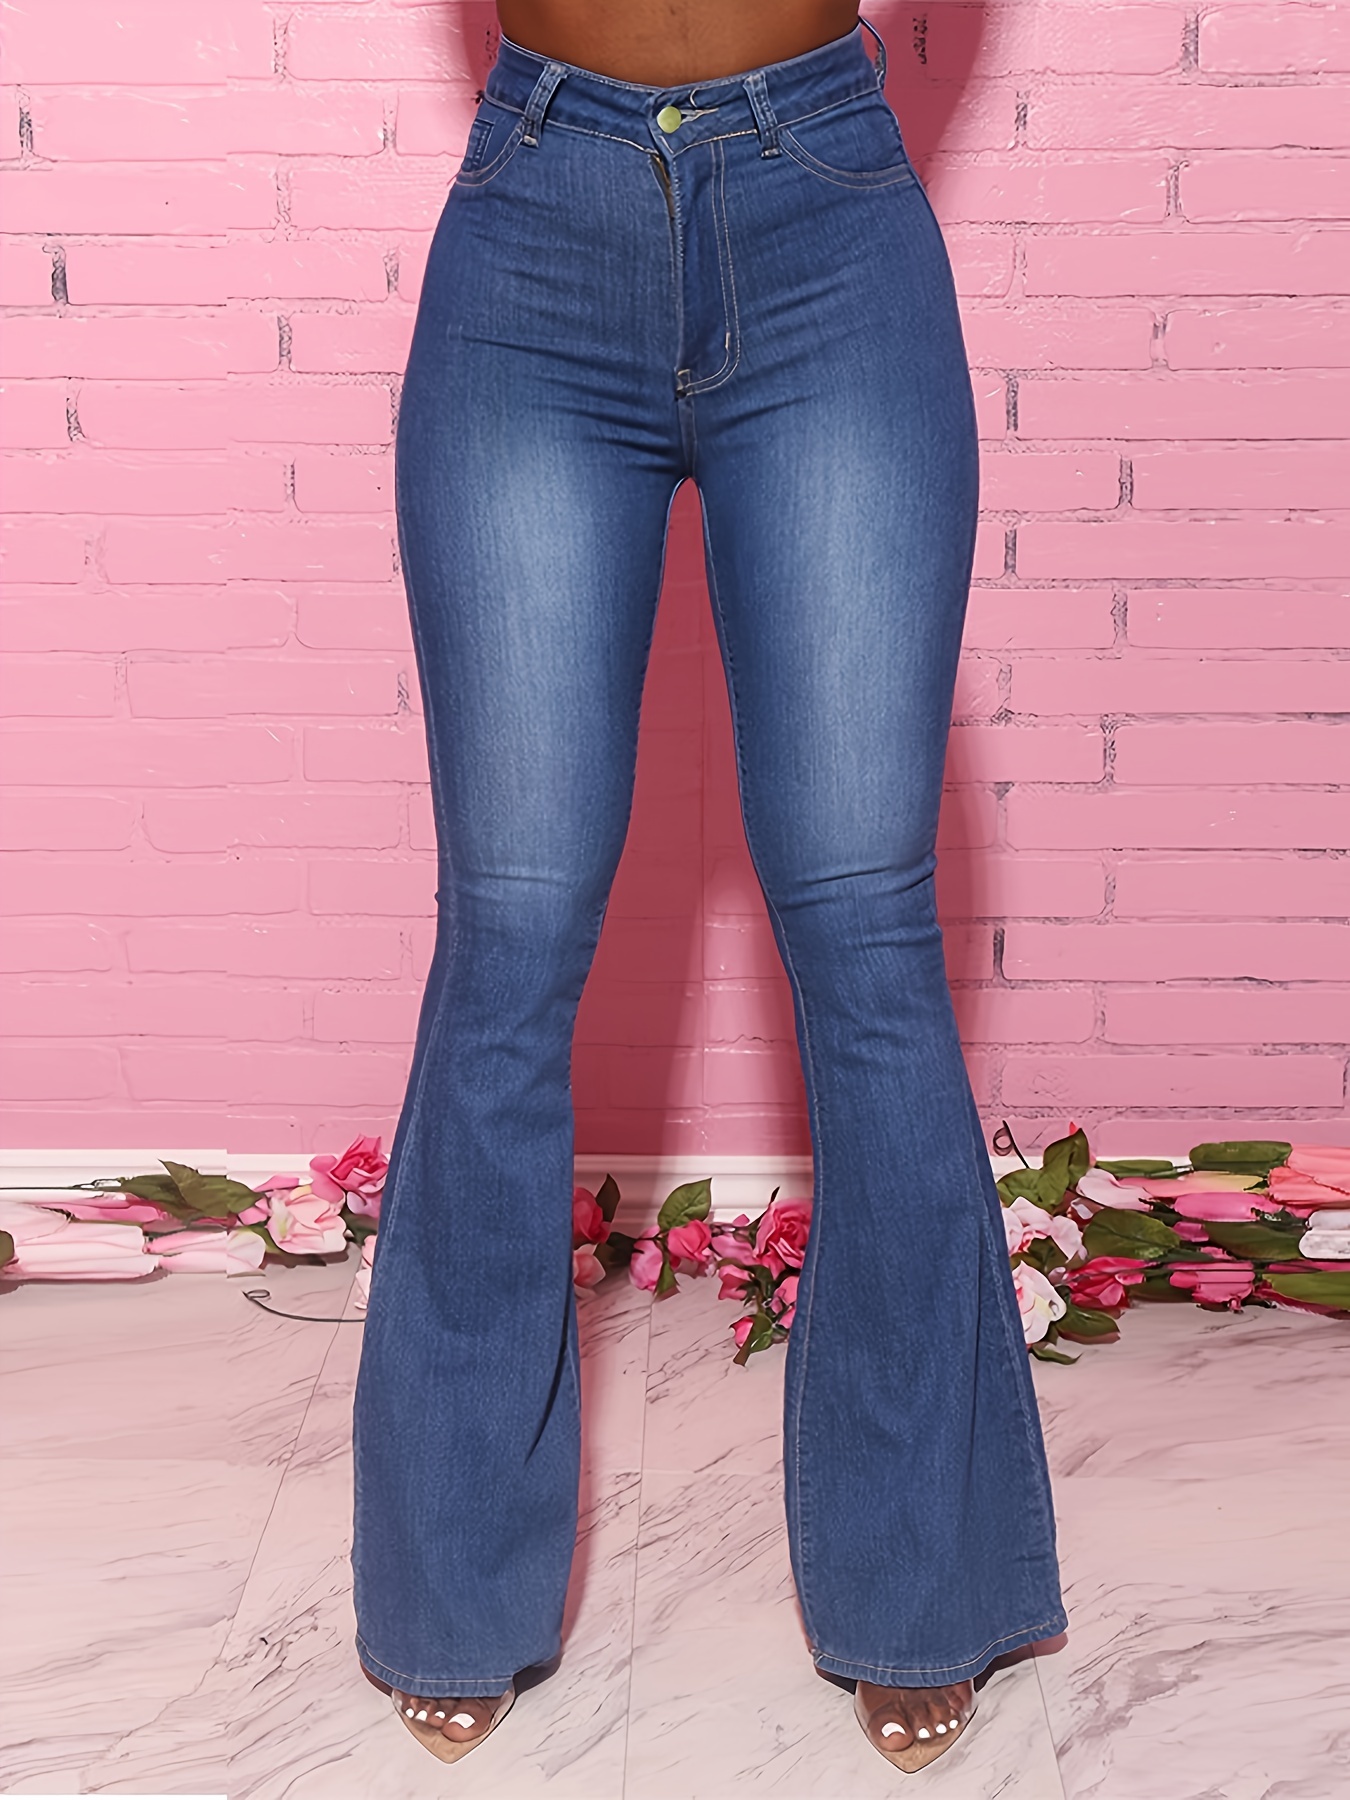 Pantalon jeans de cintura alta – Gloude